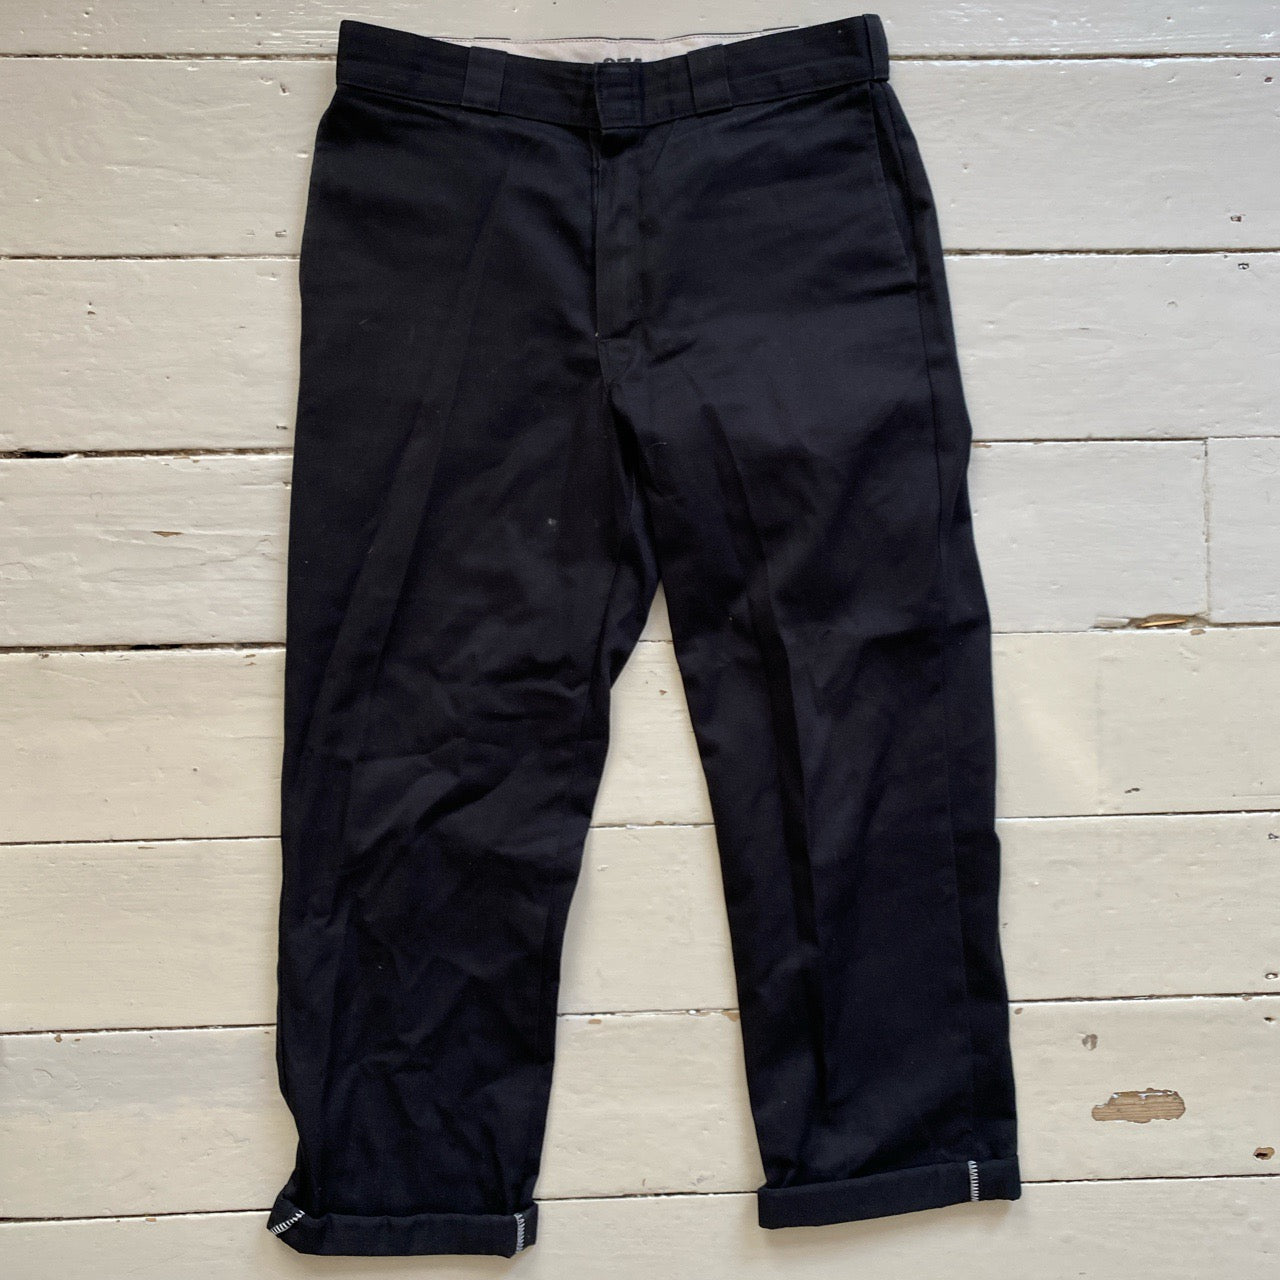 Dickies Black 874 Original Fit Trousers (34/34)